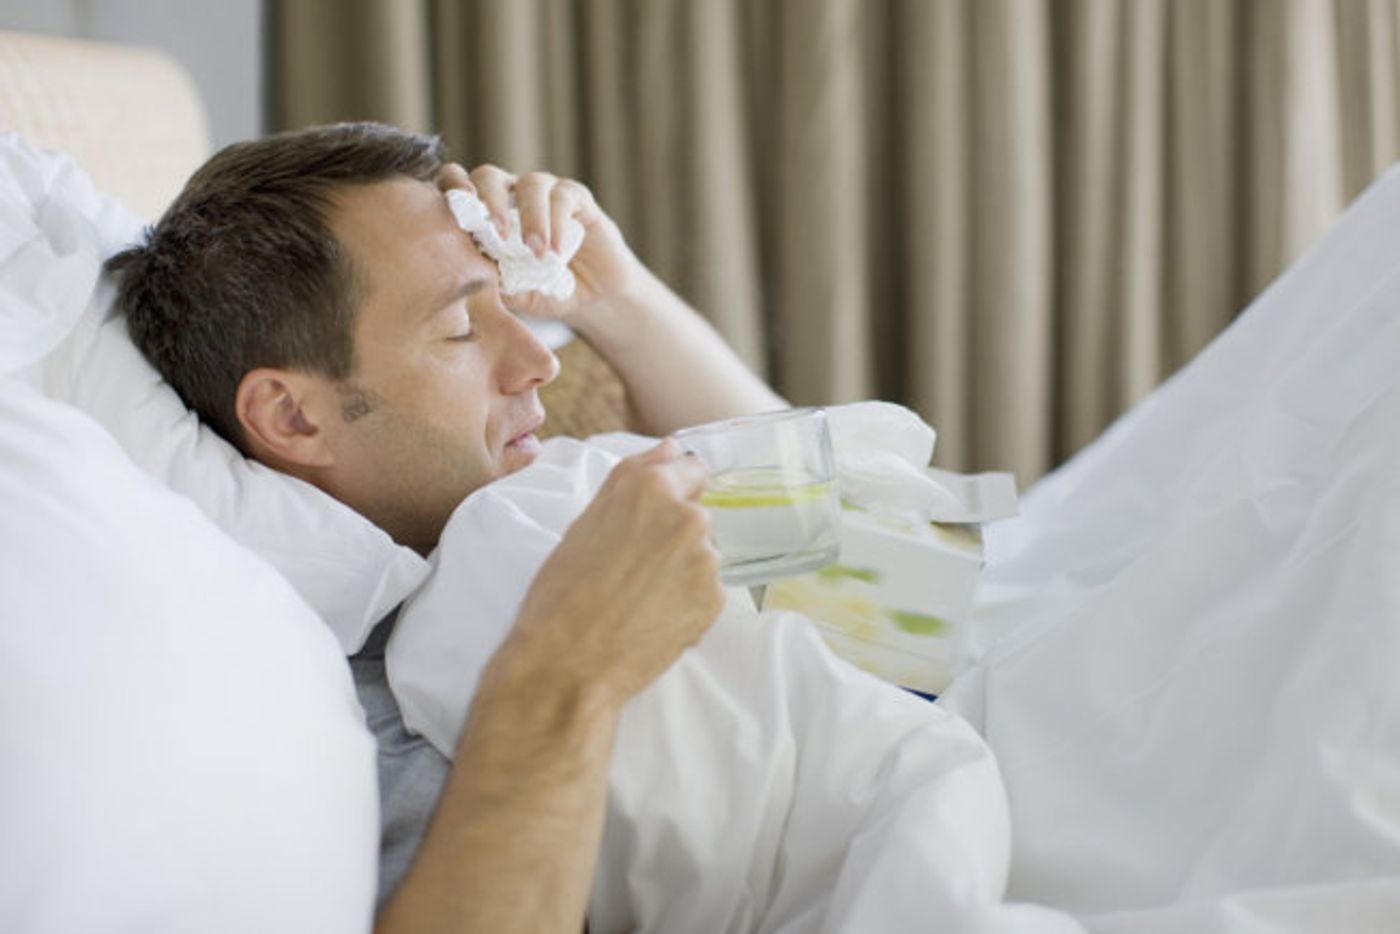 Estrogen protects against flu virus, men not so lucky